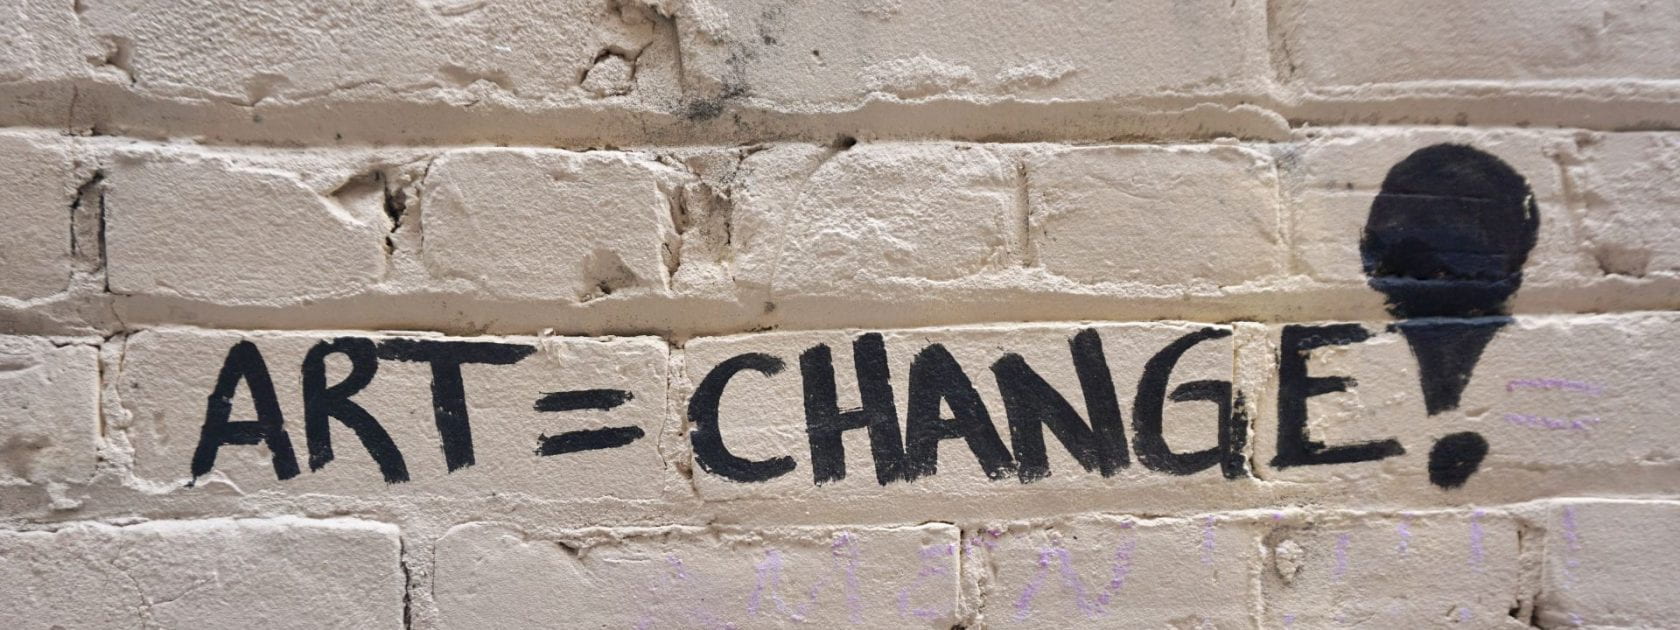 Graffiti on a brick wall that reads ART=CHANGE!